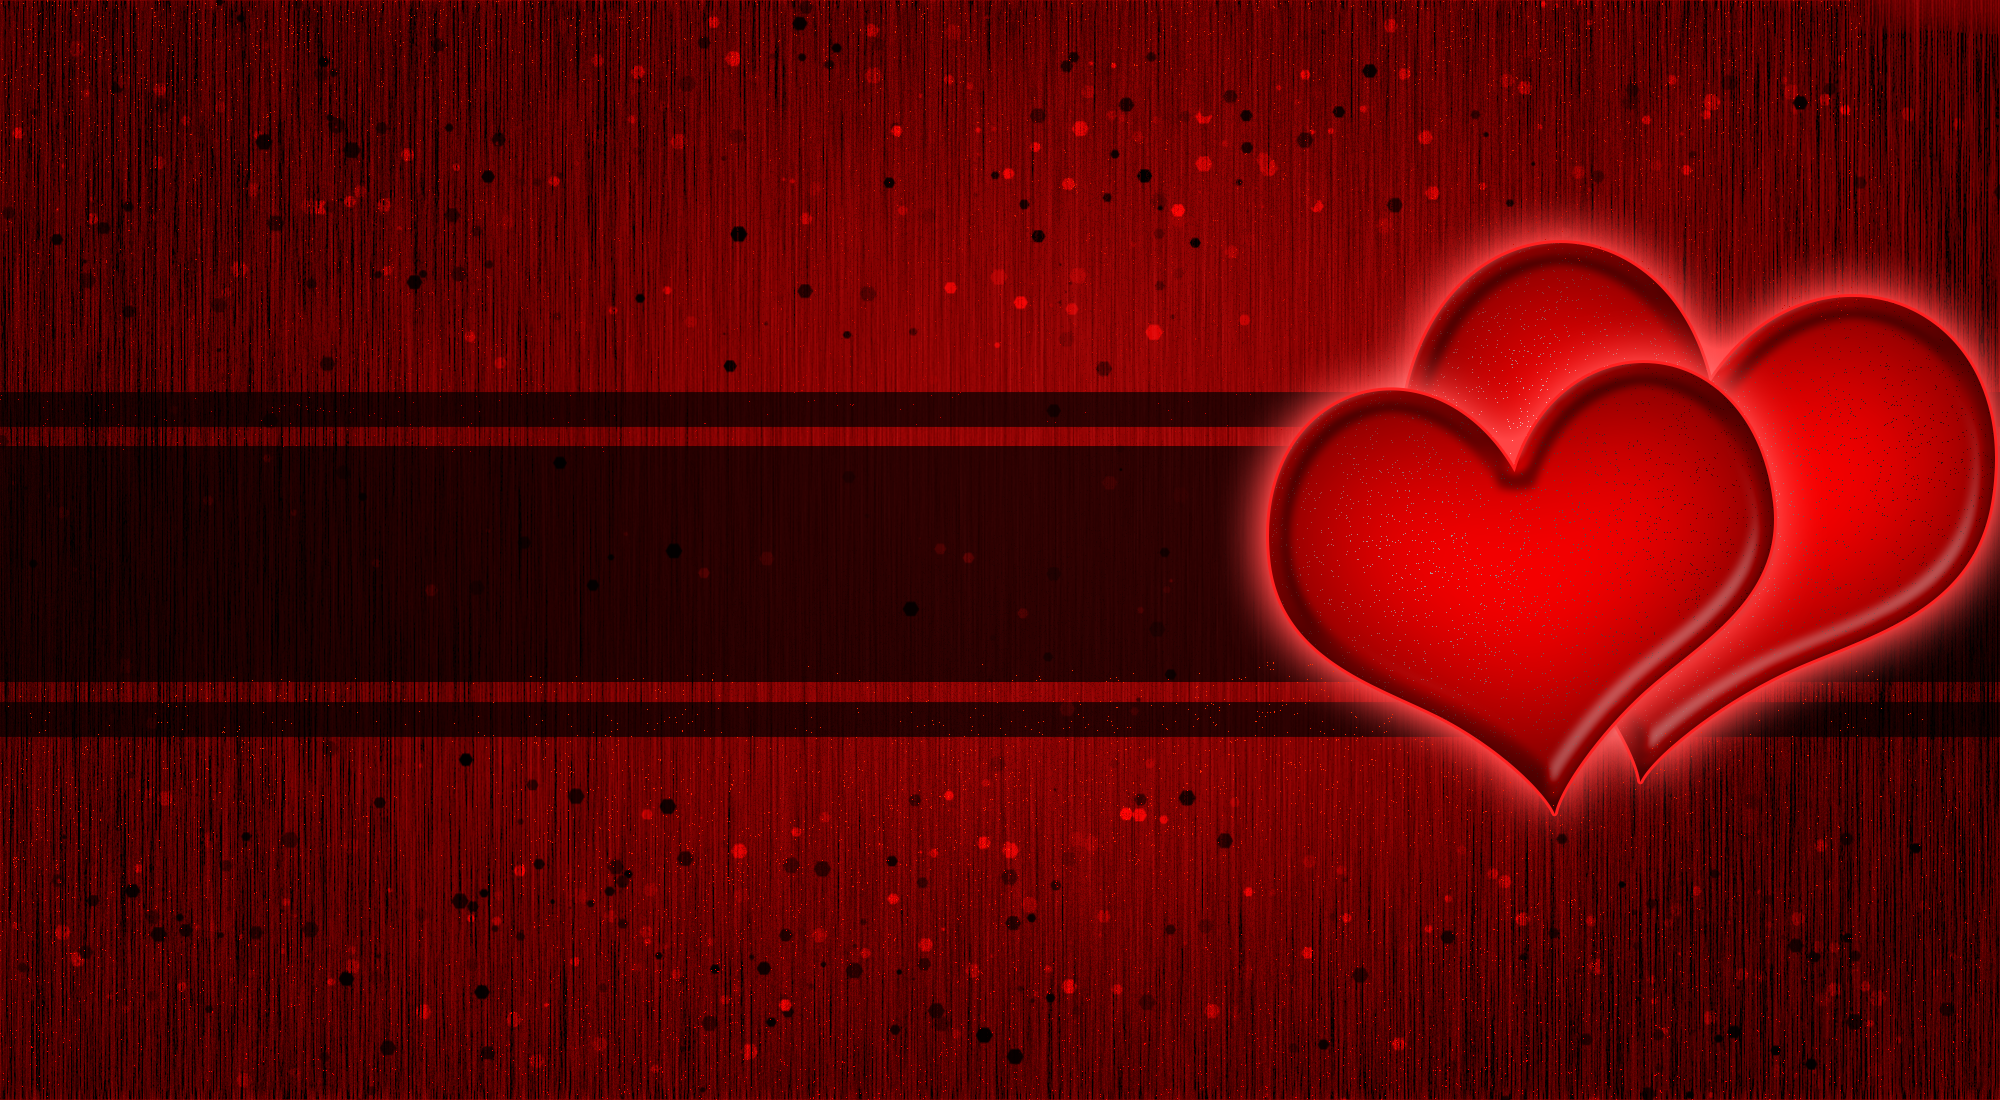 Love Valentine Red Heart Design Digital Art Red Background 2000x1100